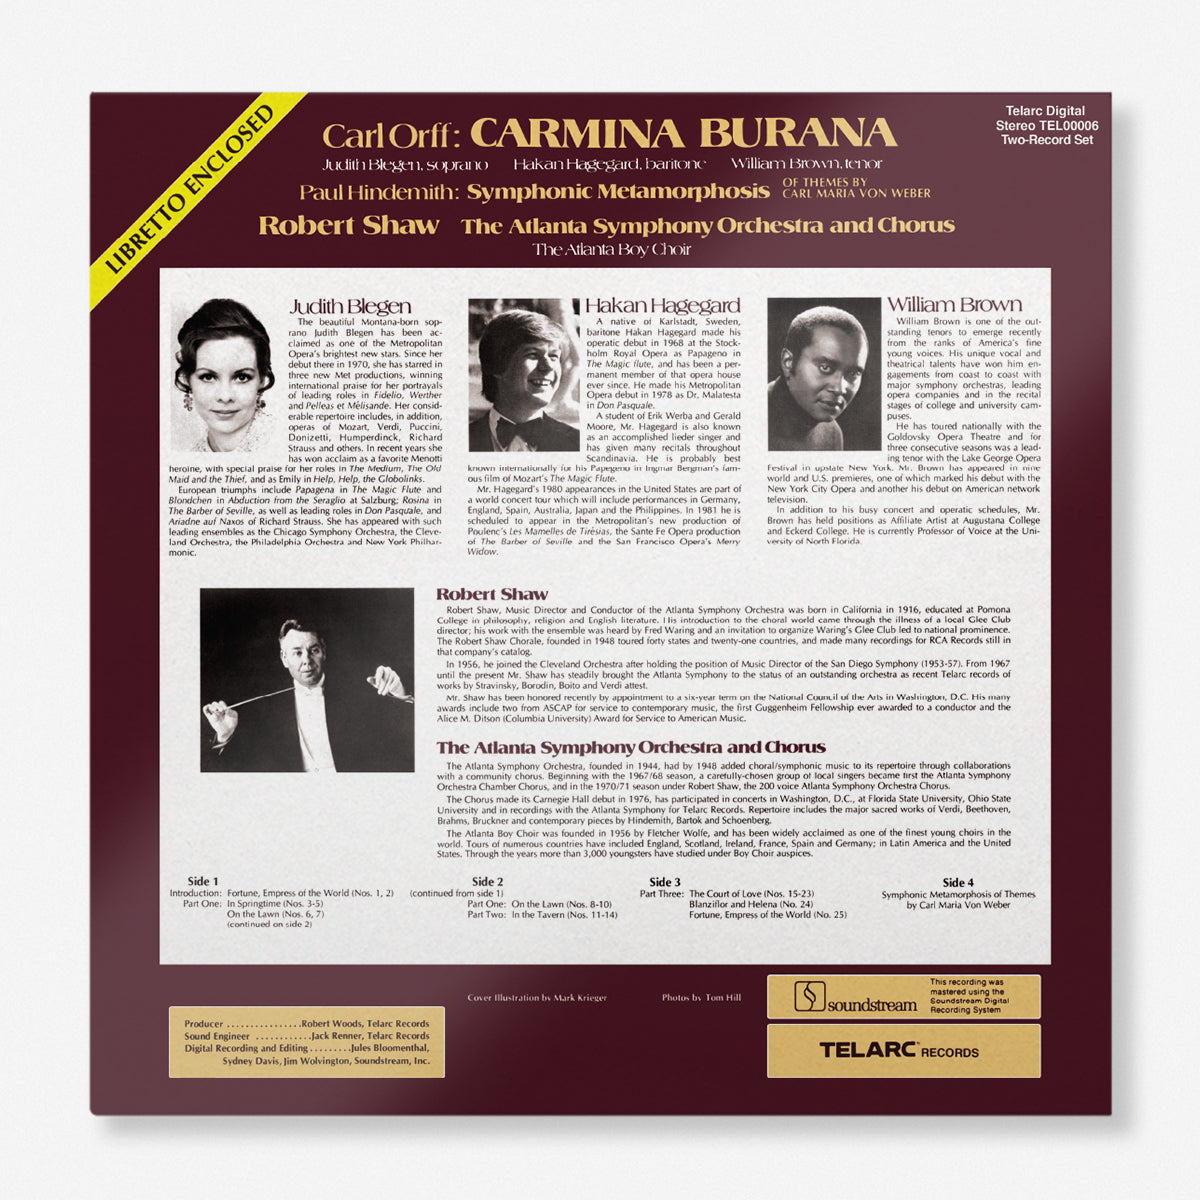 Carl Orff&#39;s Carmina Burana &amp; Paul Hindemith&#39;s Symphonic Metamorphosis (2-LP)